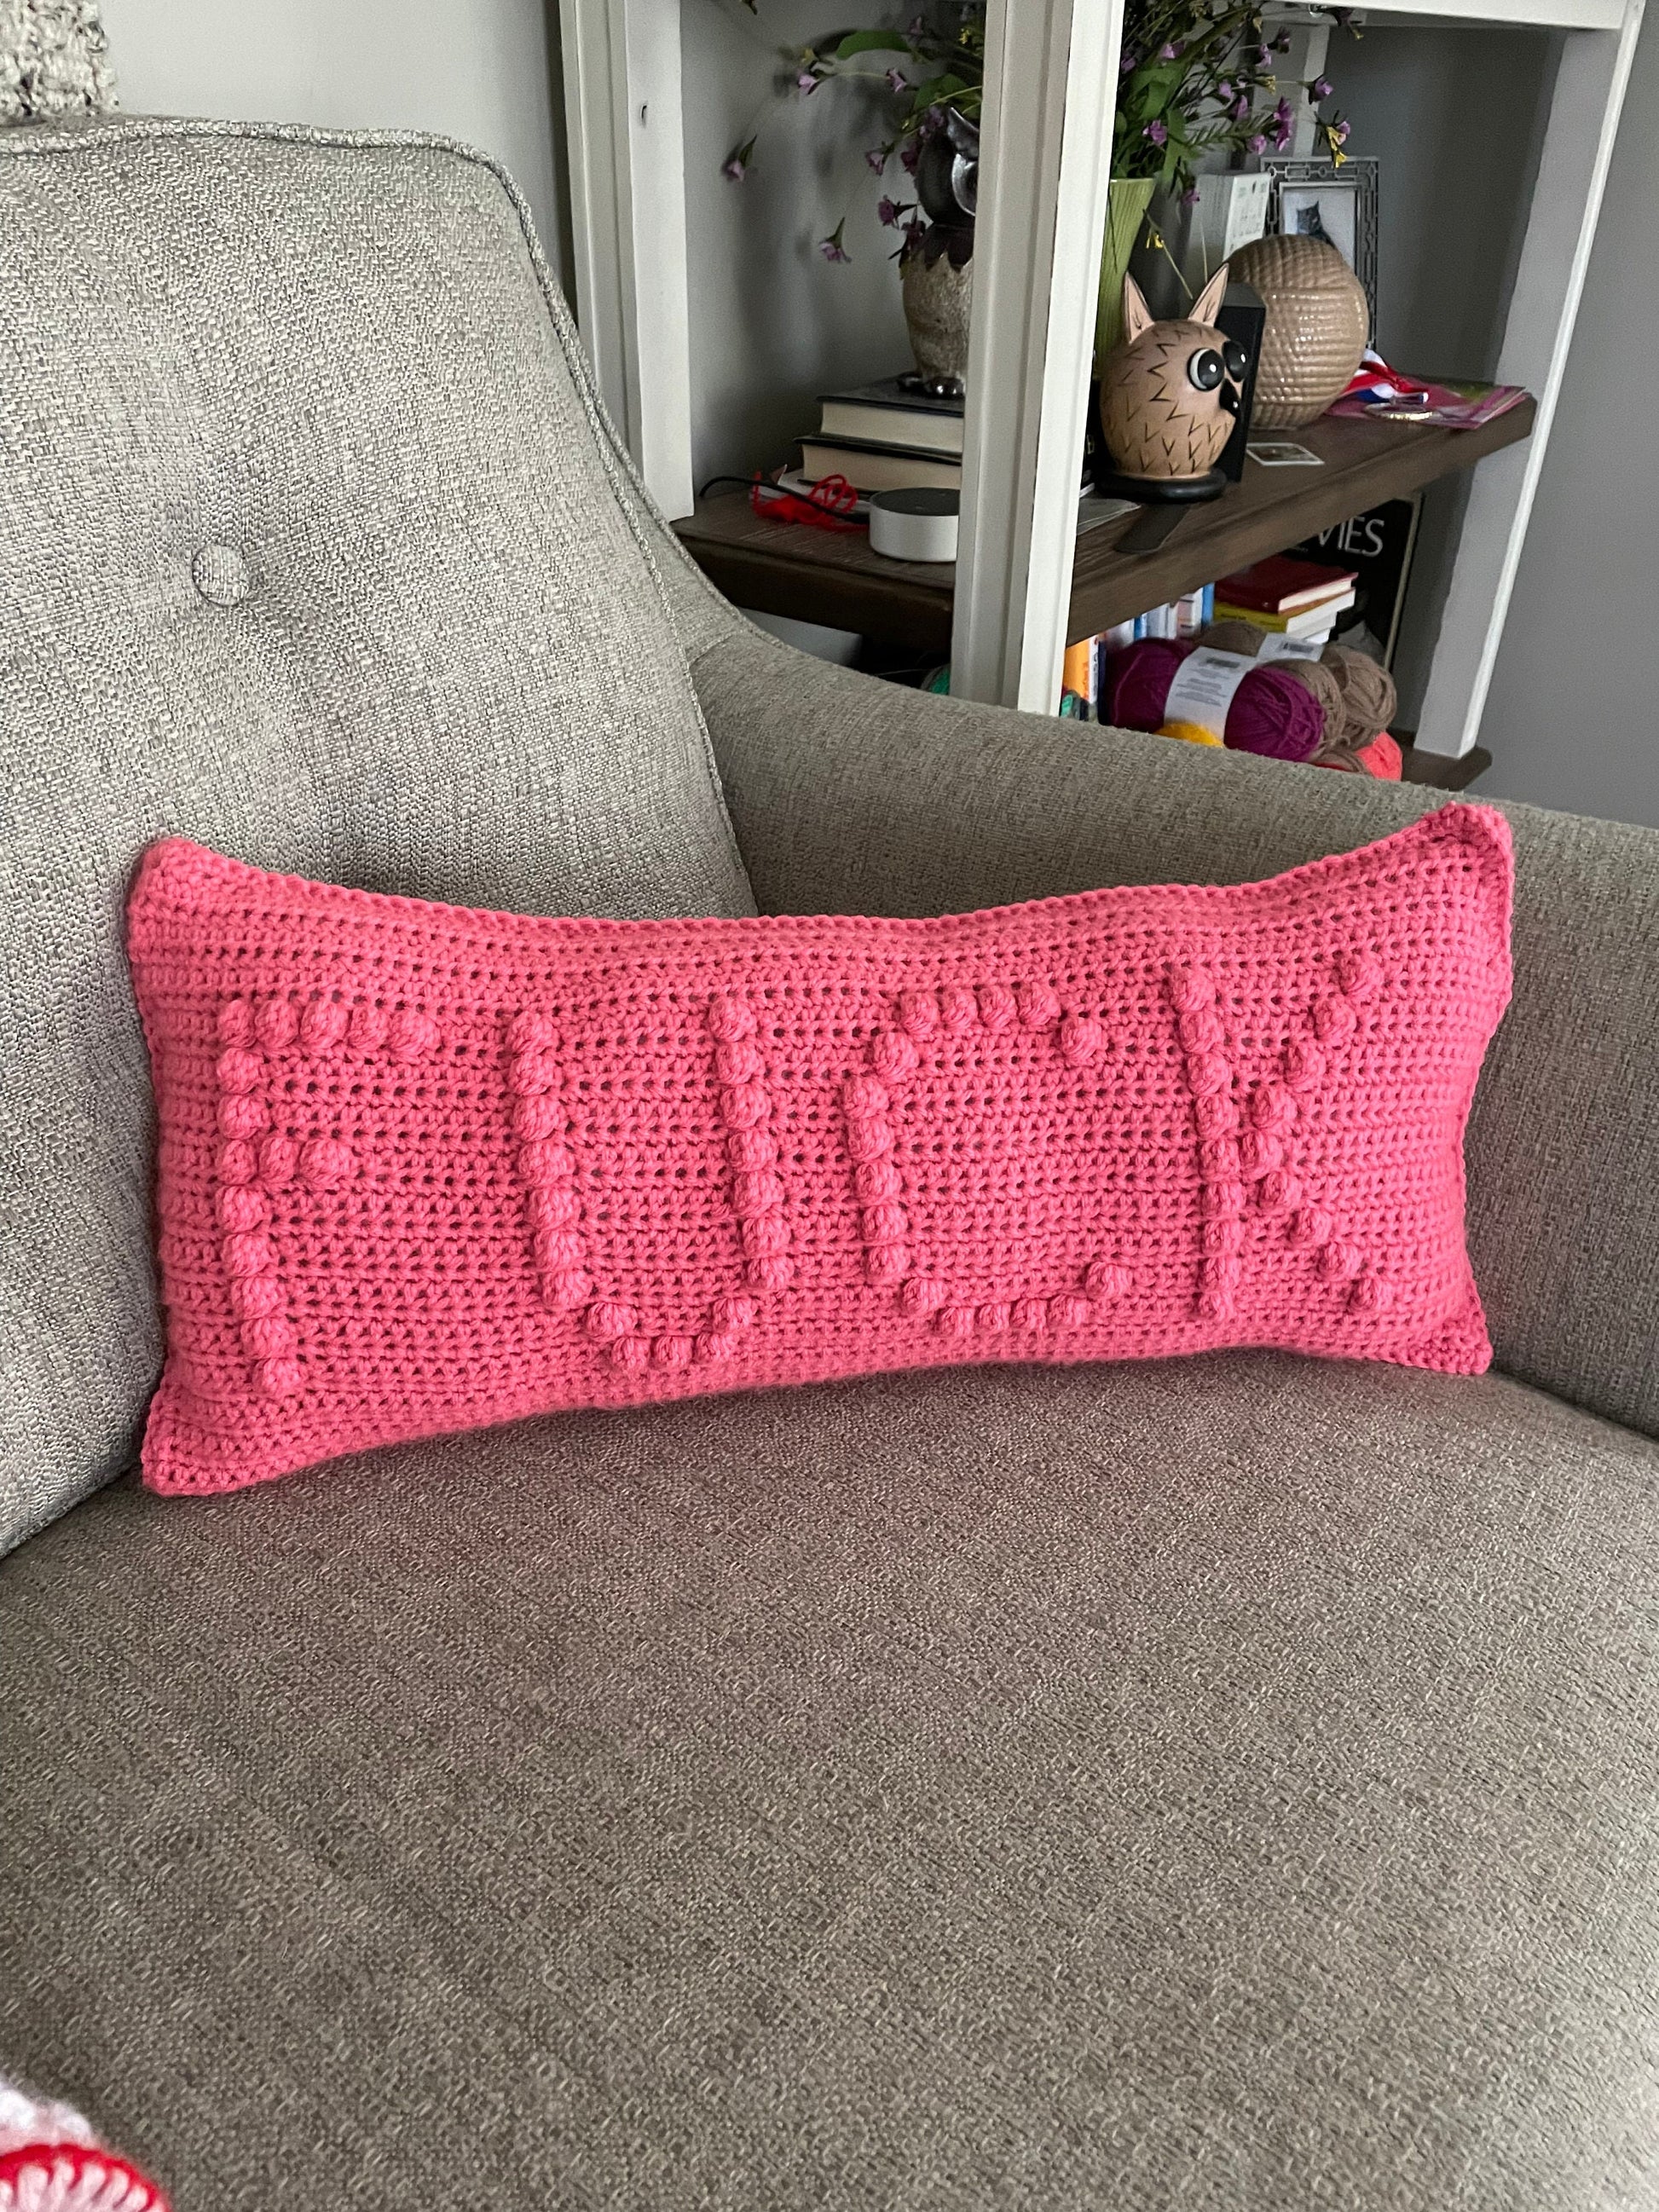 CROCHET PATTERN- This Fucking Pillow, Crochet Fuck Pillow